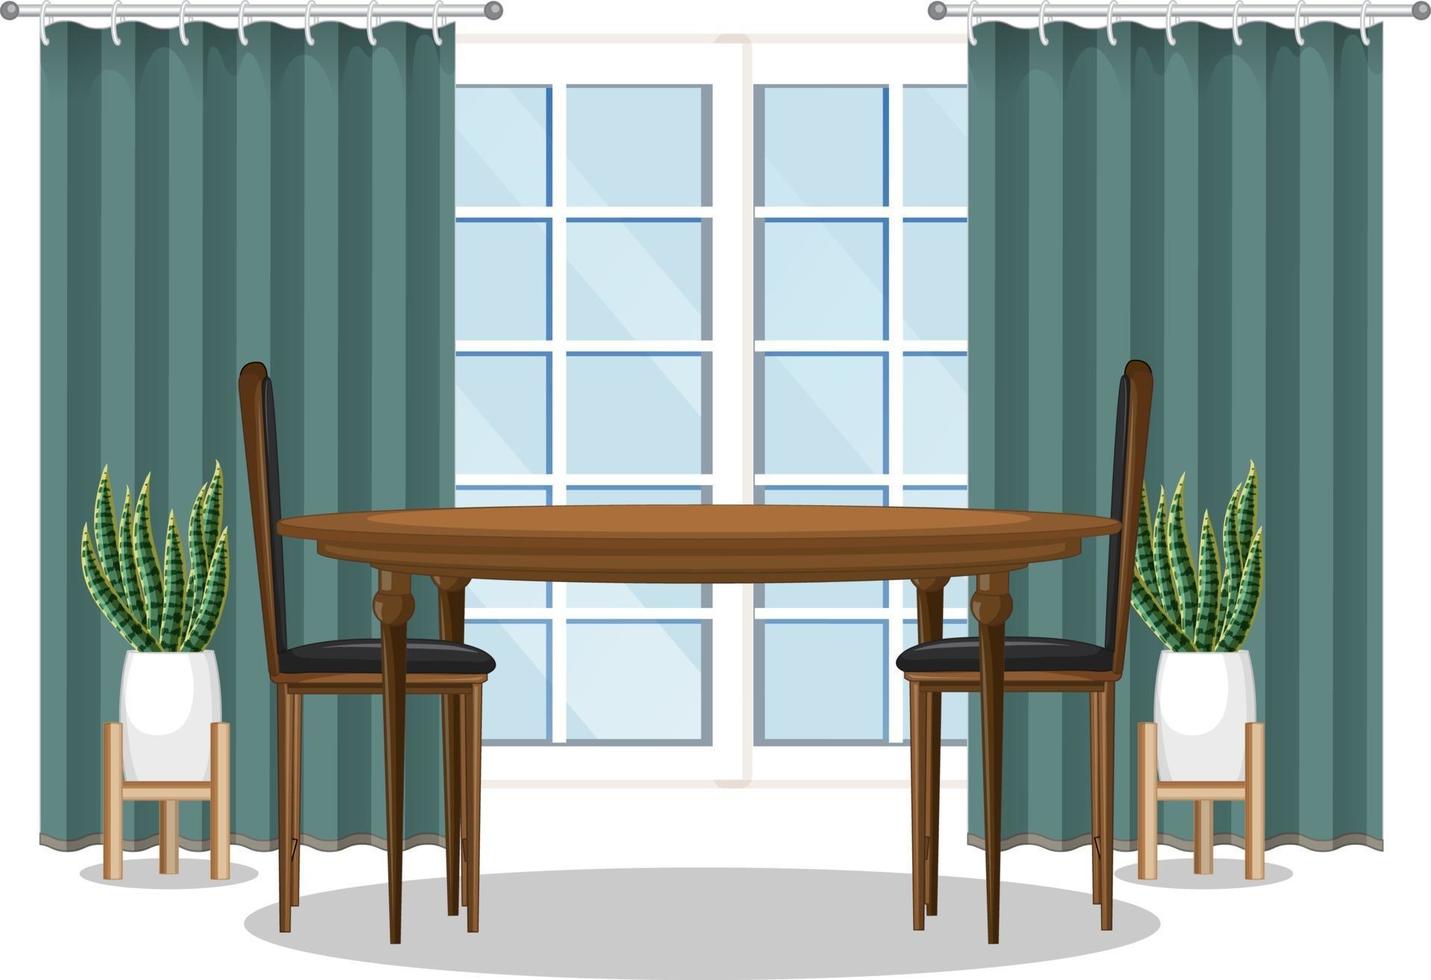 juego de mesa de comedor con ventana y cortina verde vector